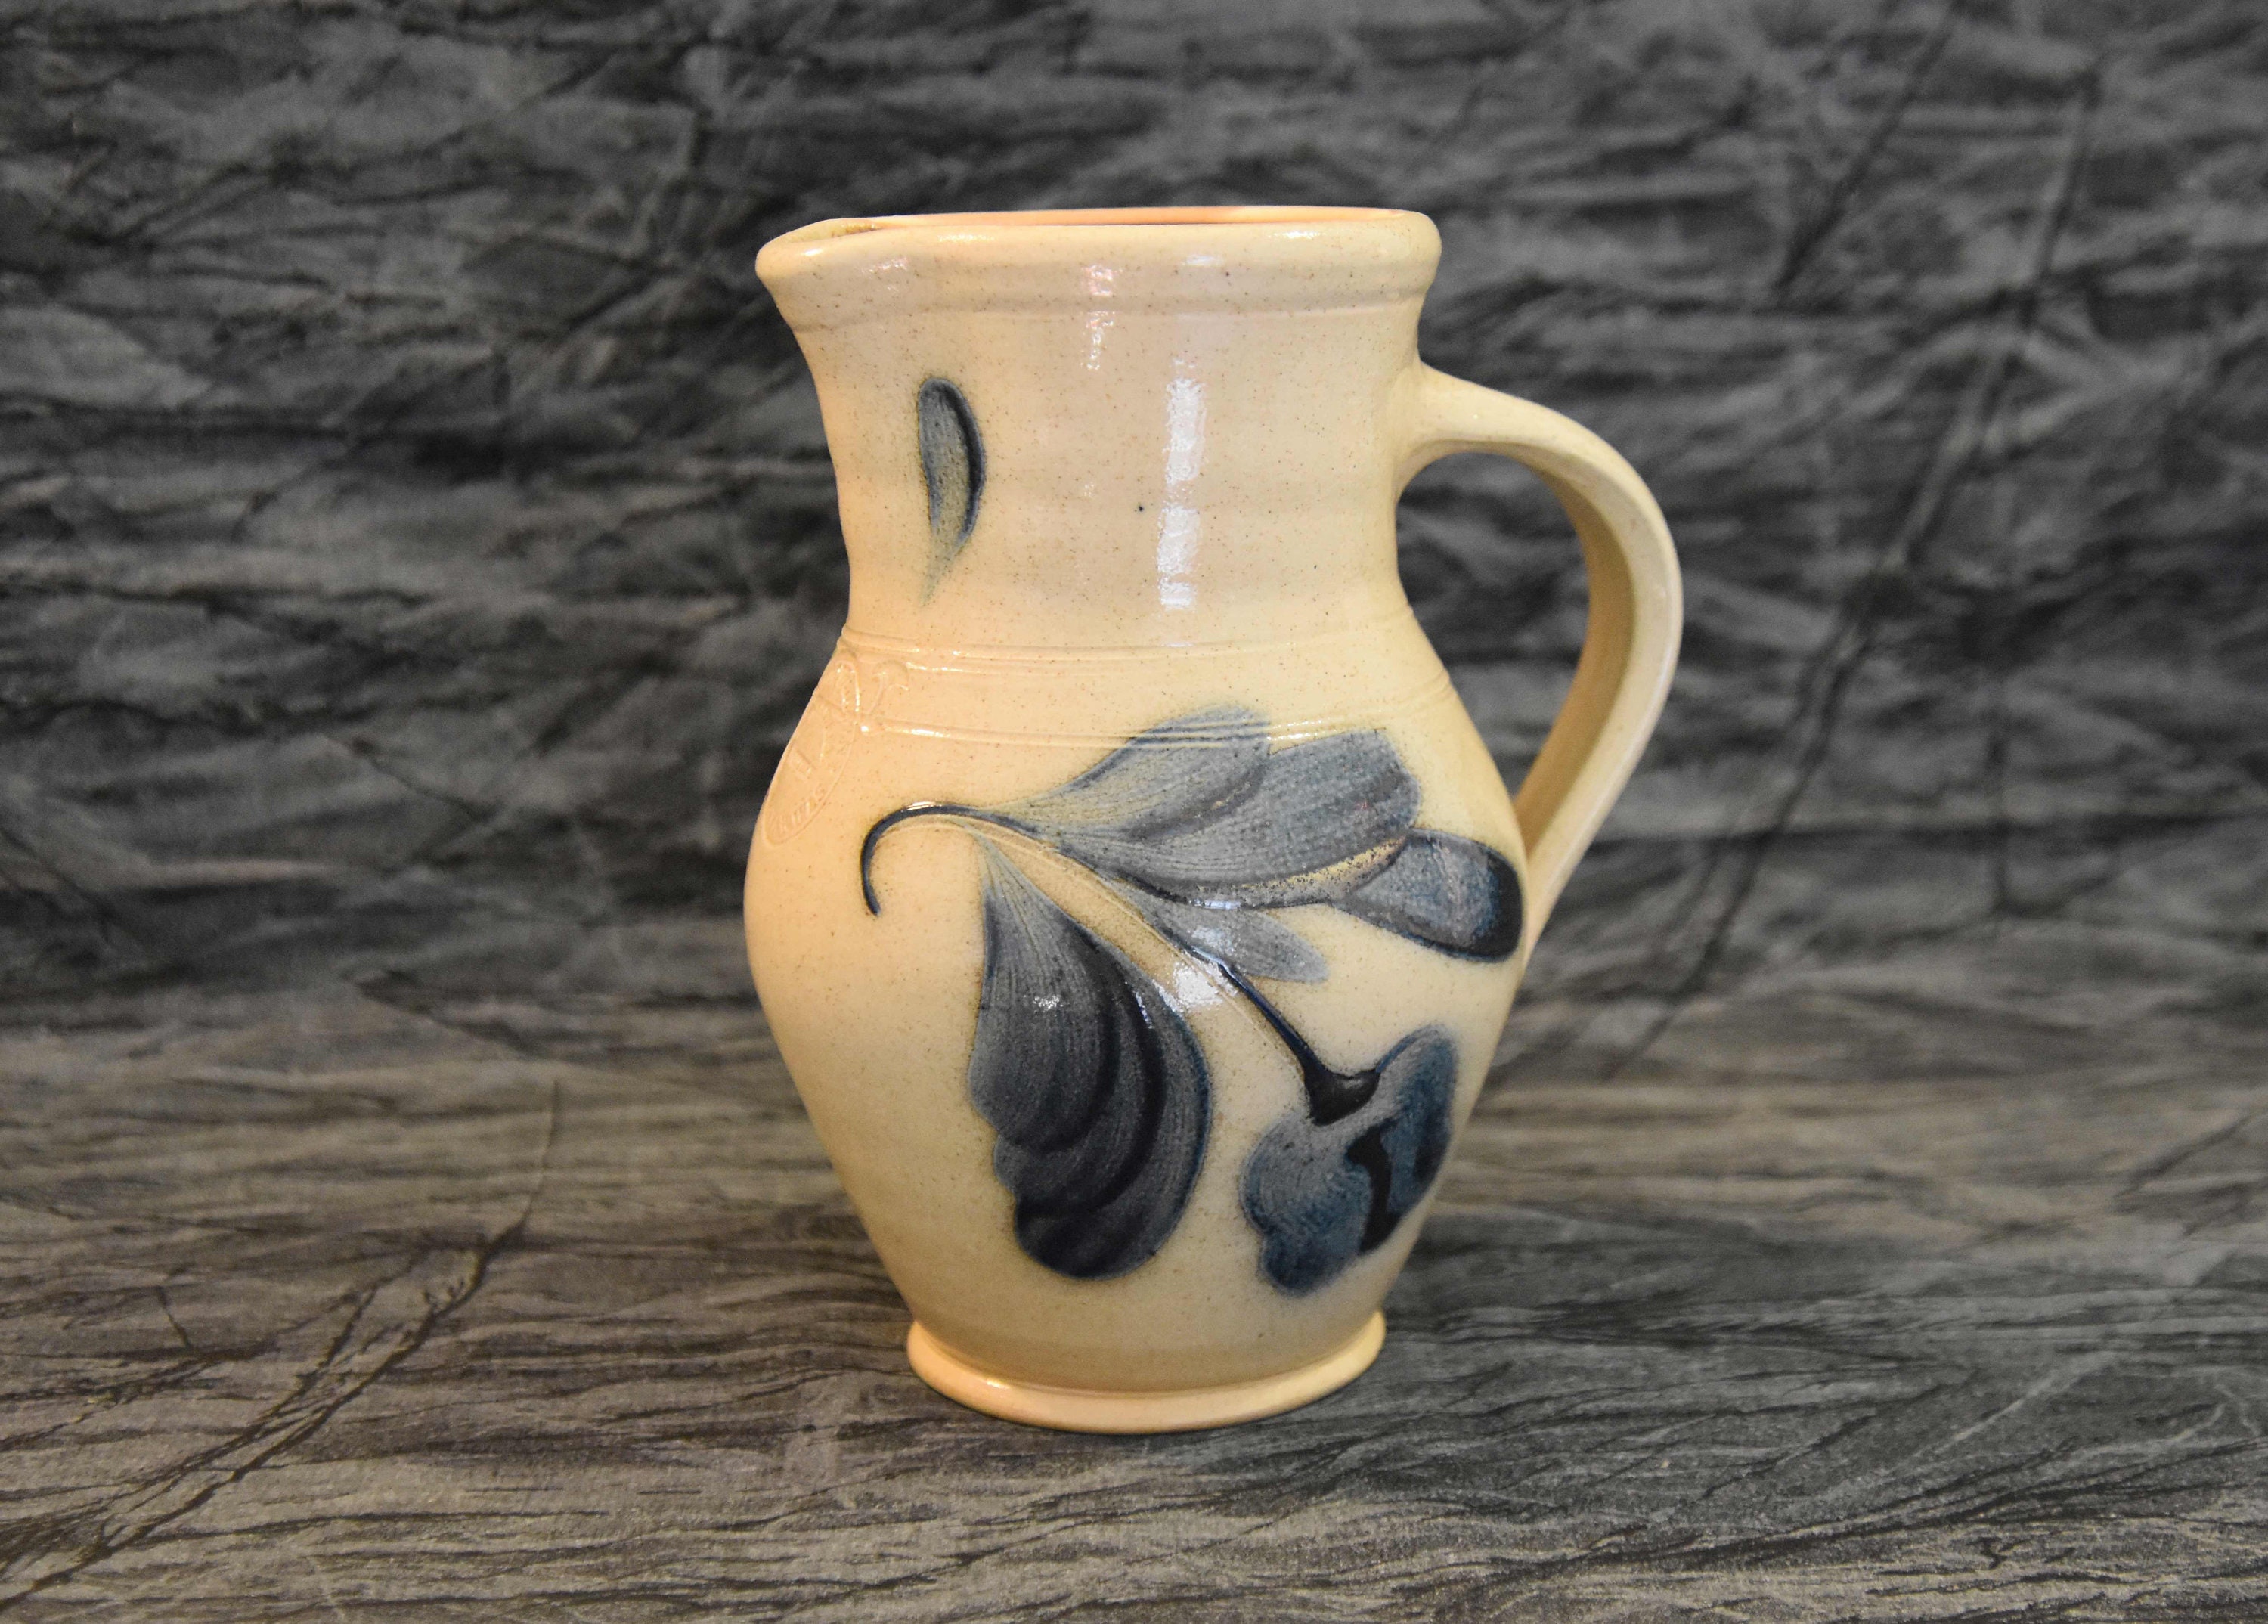 500ml Pottery Glaze Ceramic Medium Temperature 1180-1230 Degrees